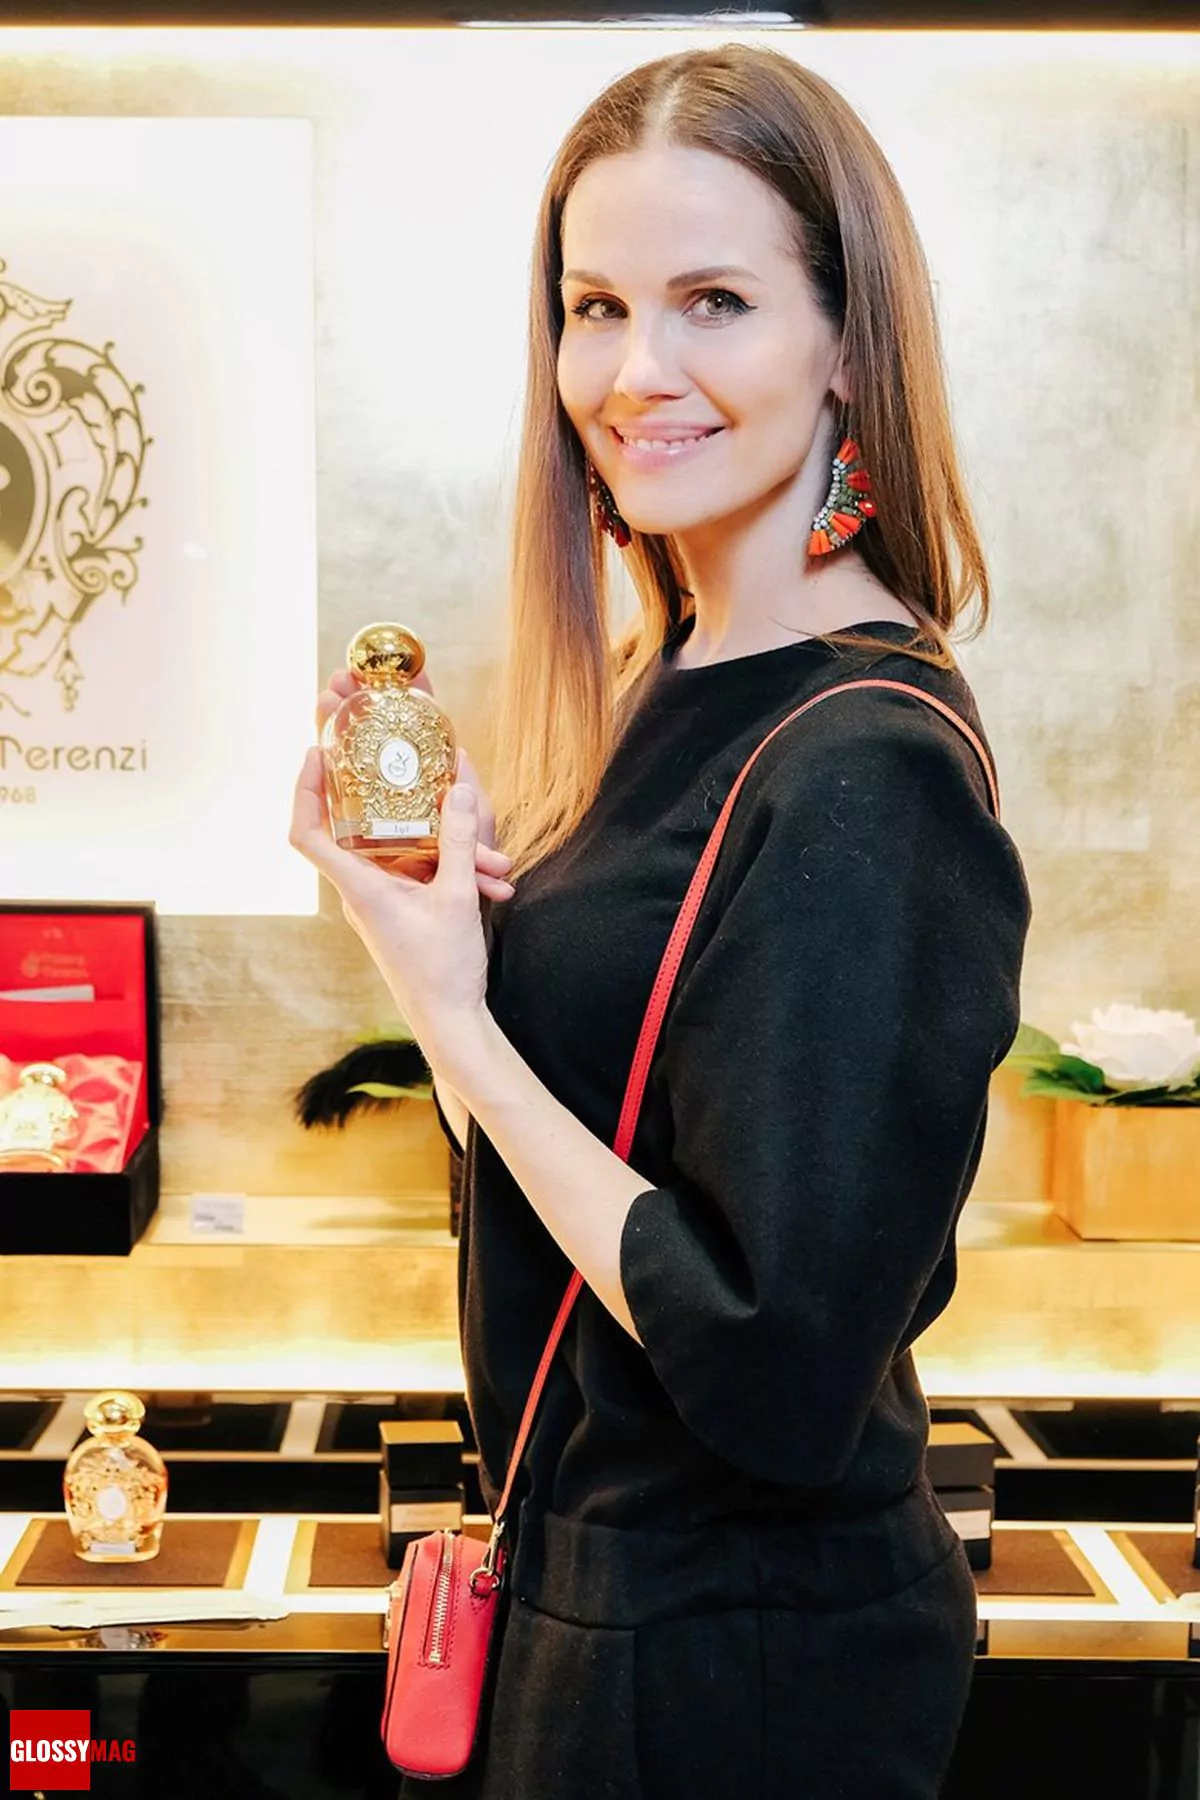 Наталья Лесниковская на открытии корнера итальянского парфюмерного бренда Tiziana Terenzi в универмаге «Цветной», 28 февраля 2018 г., фото 3